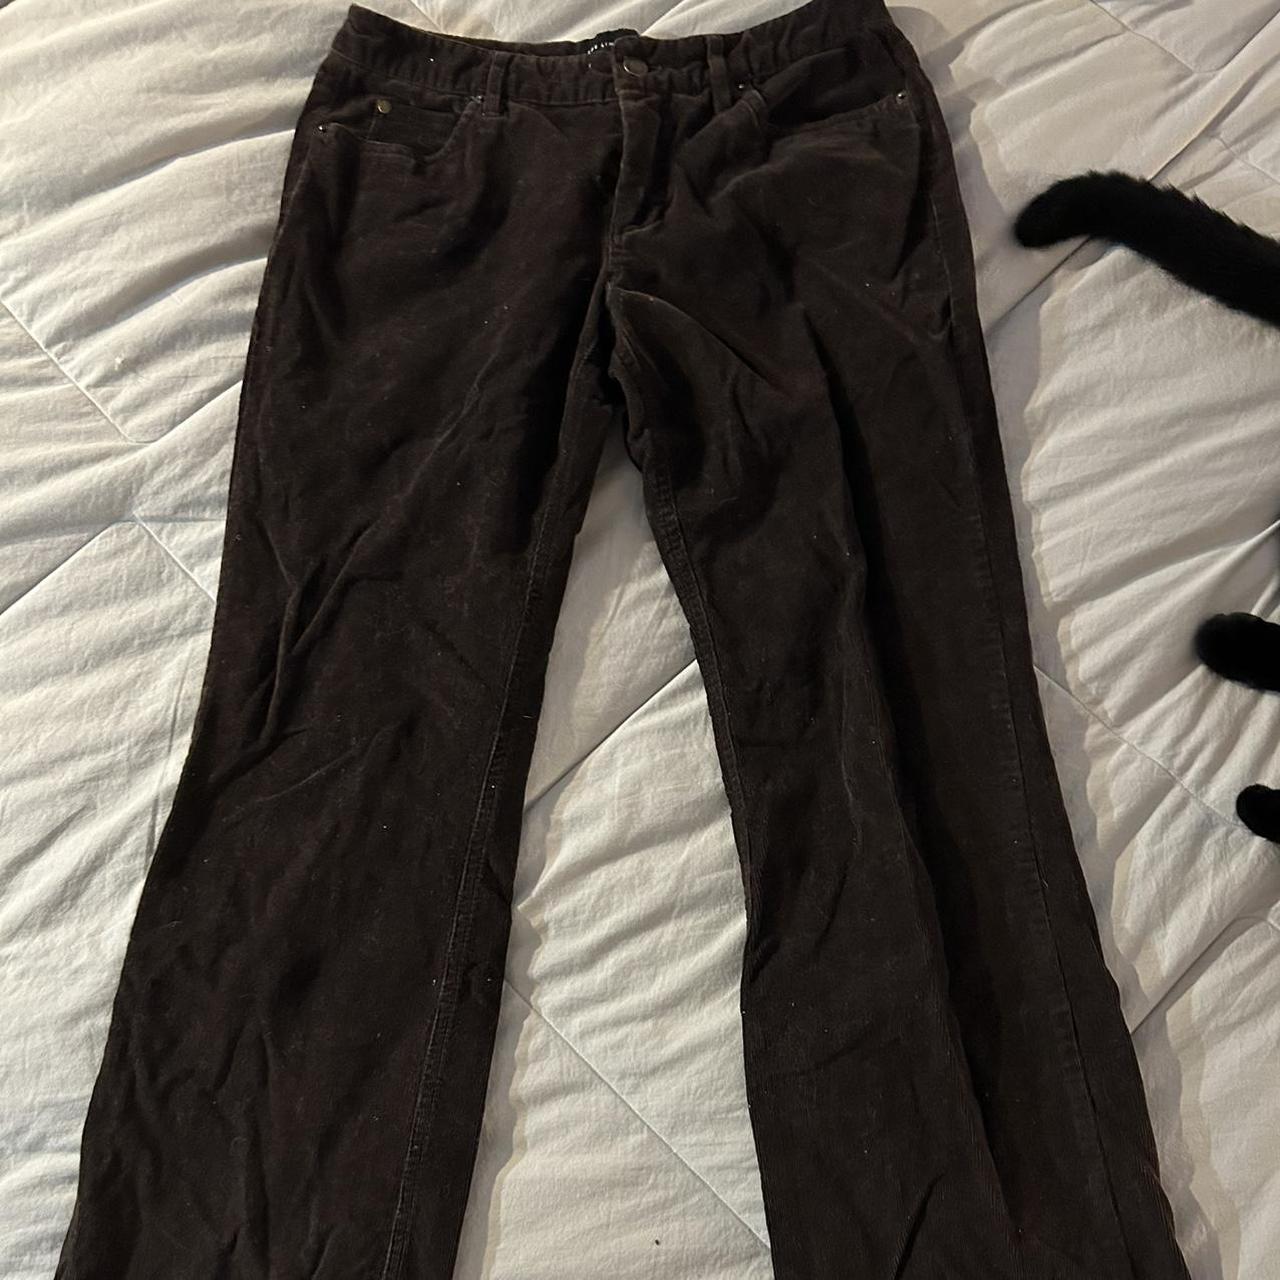 Brown corduroy pants, tagged free people for exposure - Depop